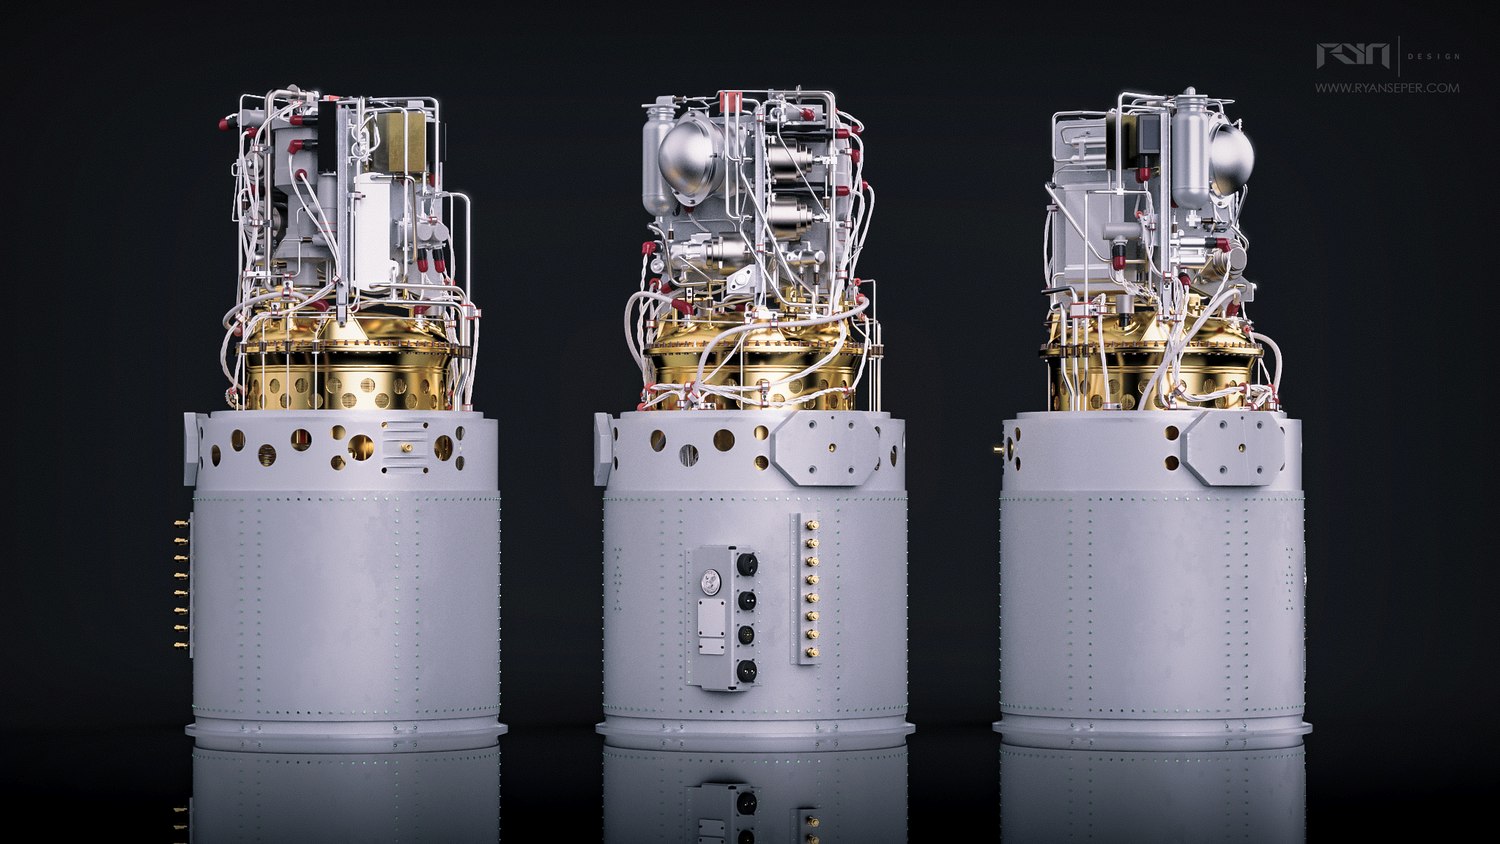 Drei mit Wasserstoff befeuerte Brennstoffzellen versorgten die Raumkapseln der Apollo-Missionen. (Bild: ryan seper)